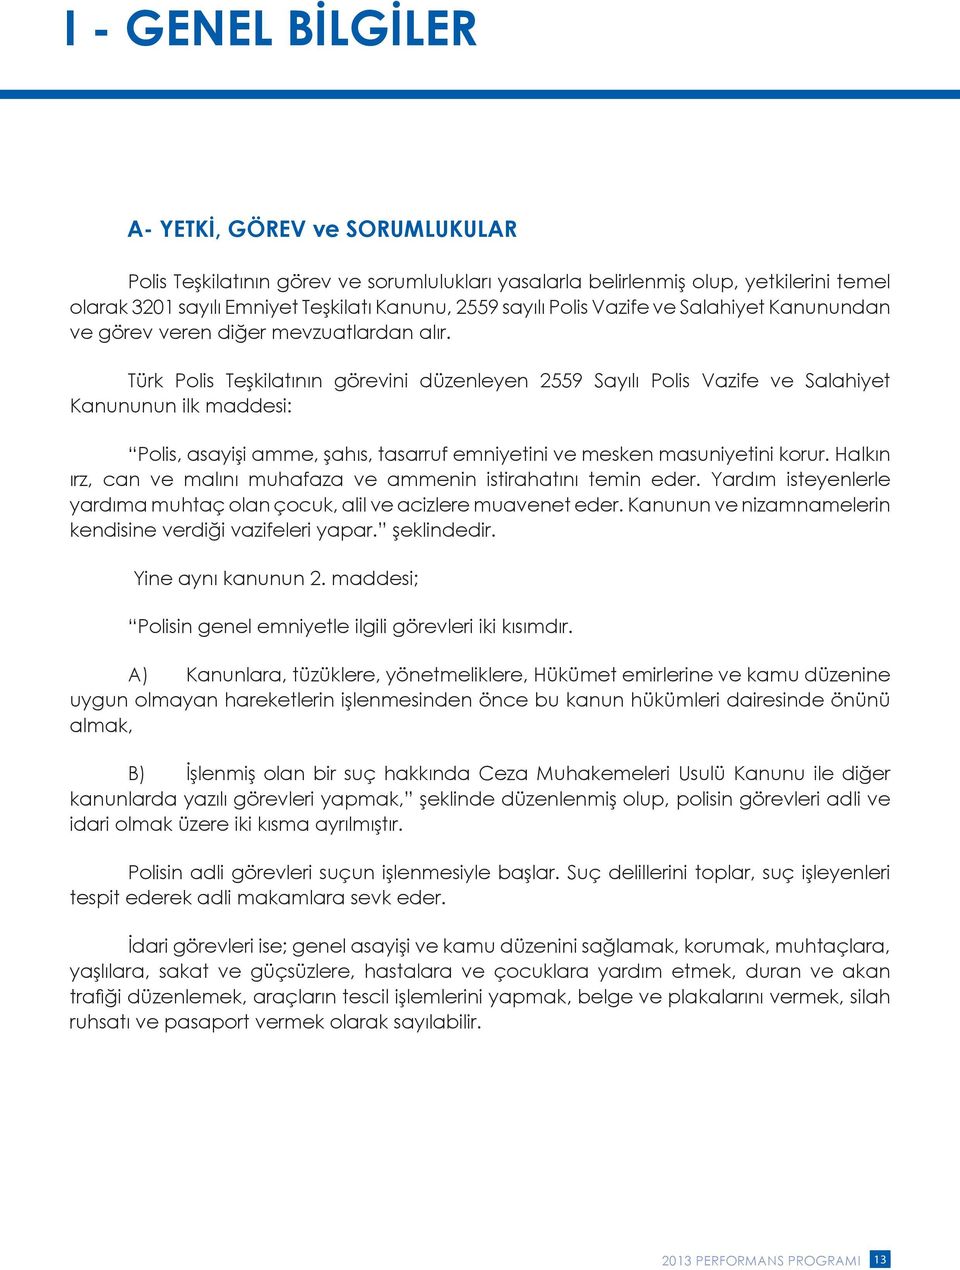 Türk Polis Teşkilatının görevini düzenleyen 2559 Sayılı Polis Vazife ve Salahiyet Kanununun ilk maddesi: Polis, asayişi amme, şahıs, tasarruf emniyetini ve mesken masuniyetini korur.